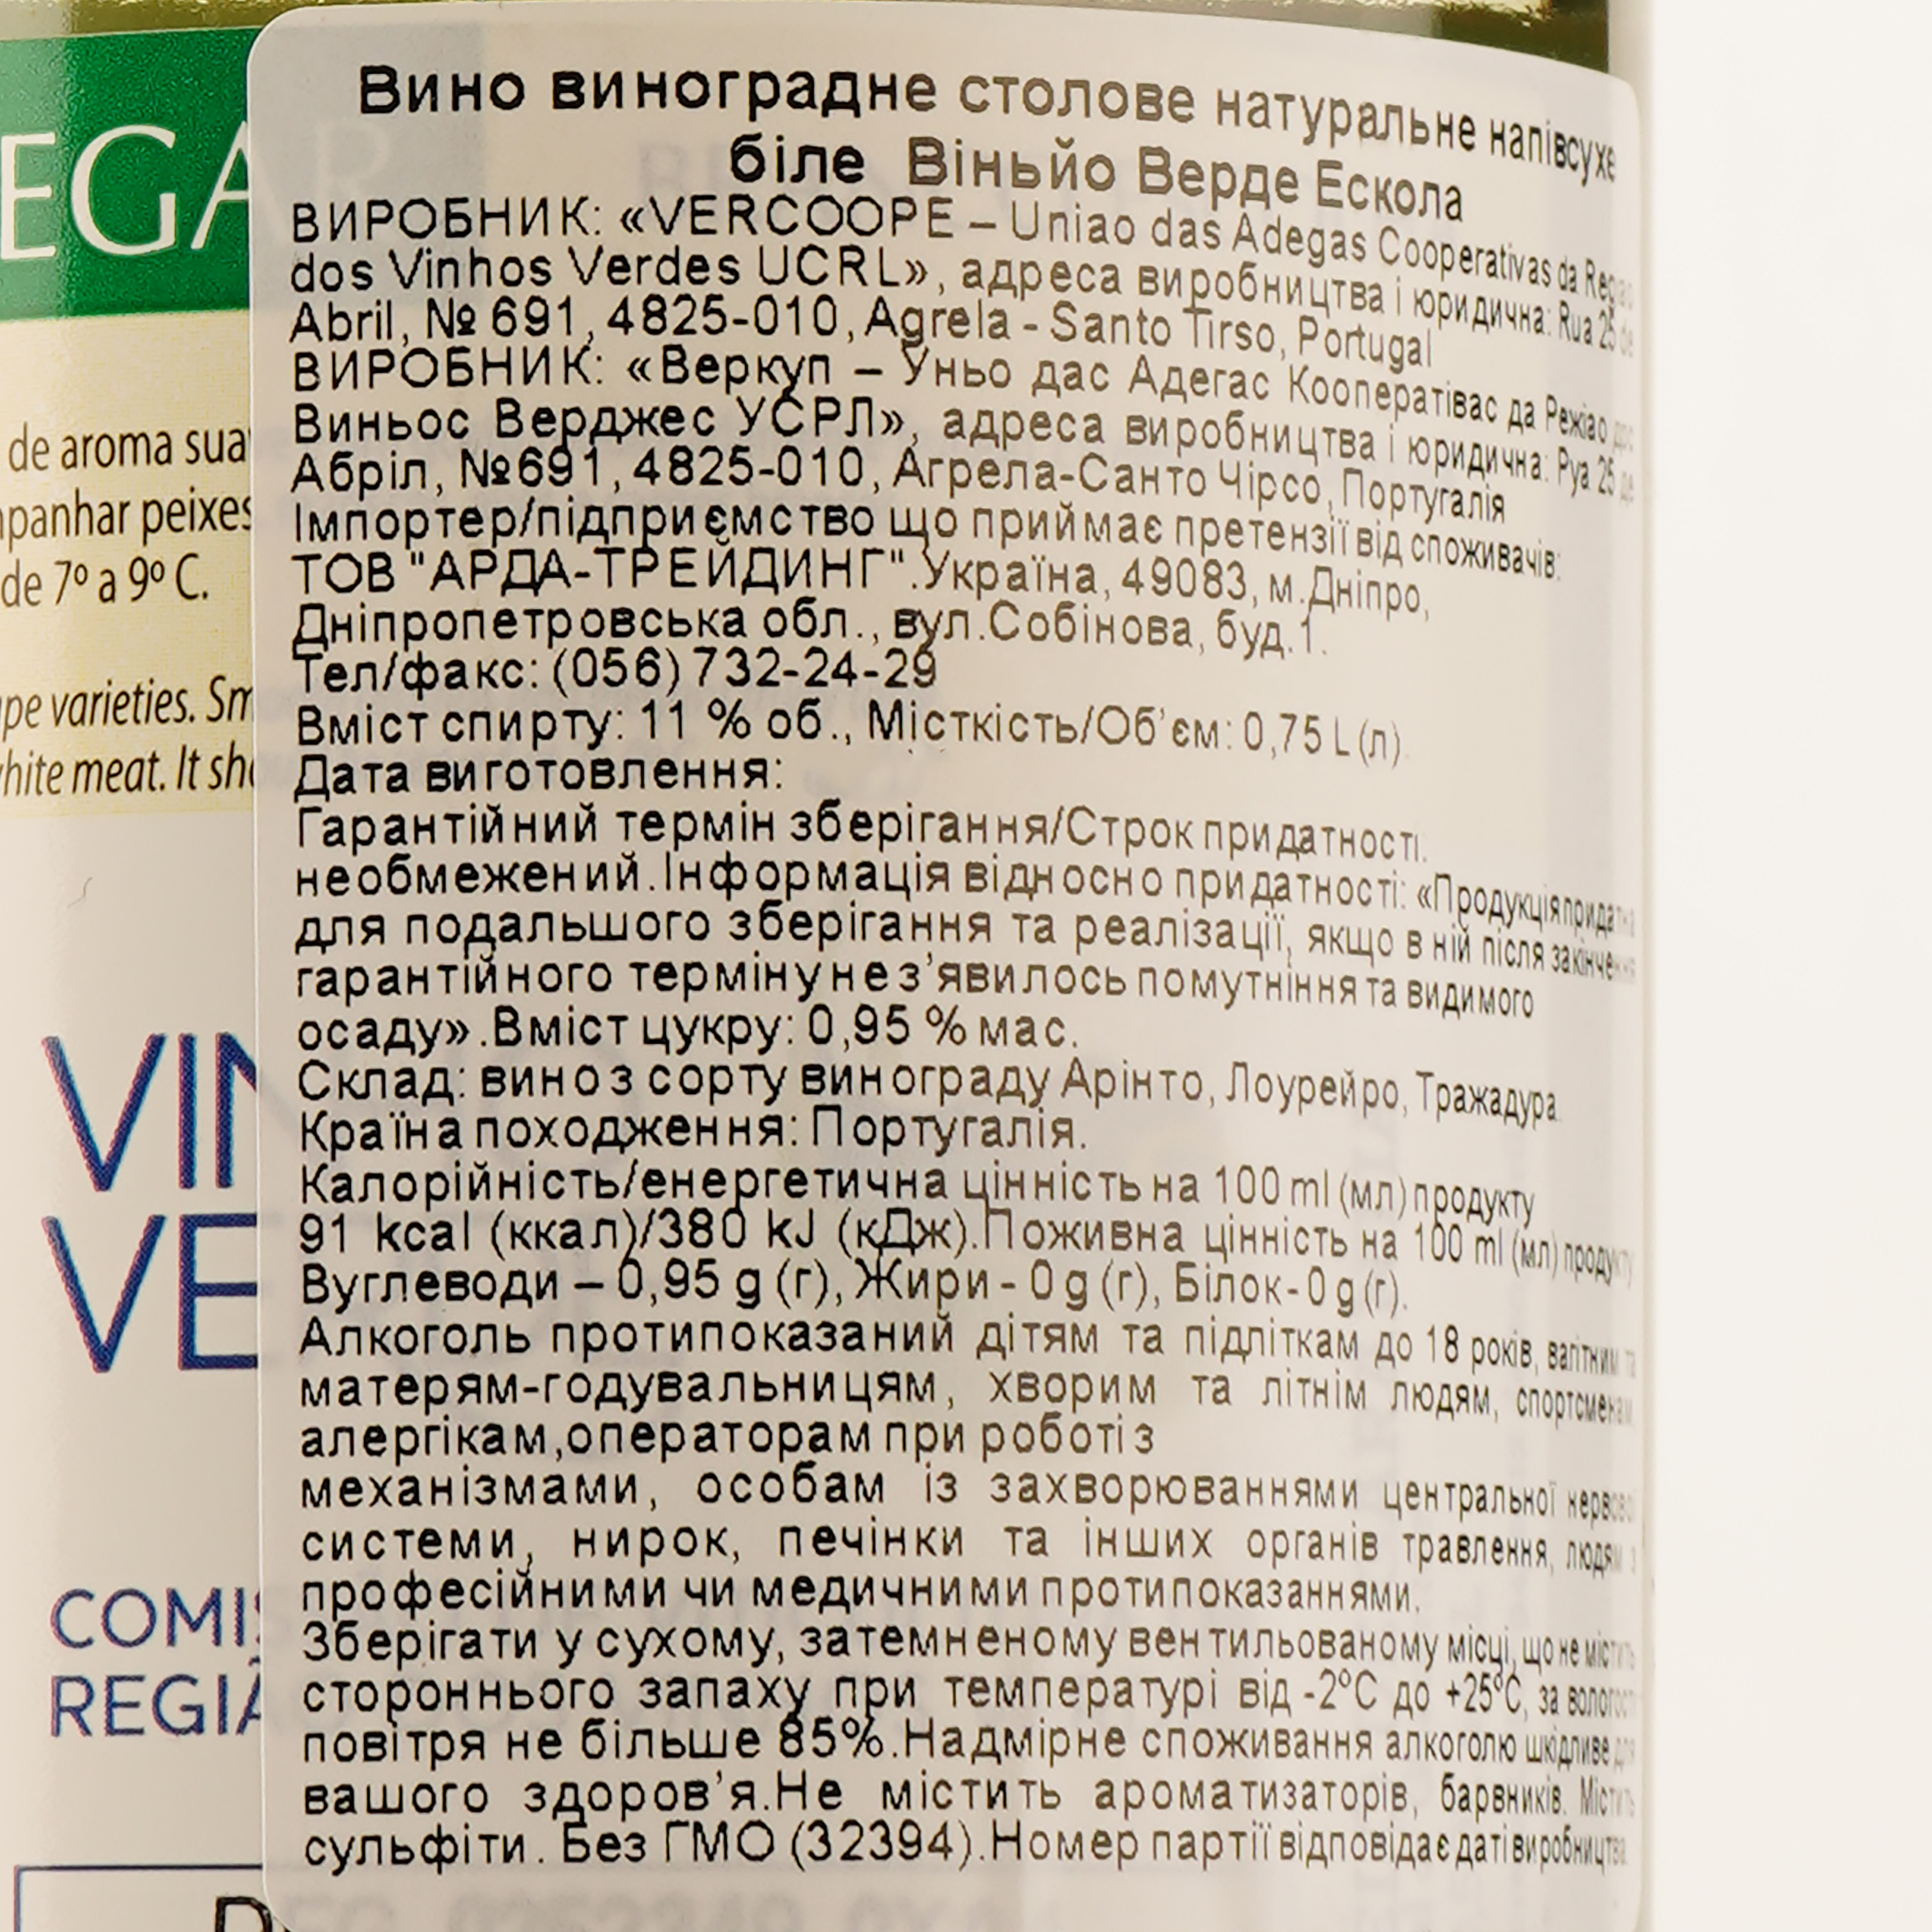 Вино Verdegar Vinho Verde Escolha, белое, сухое, 11%, 0,75 л (32394) - фото 3